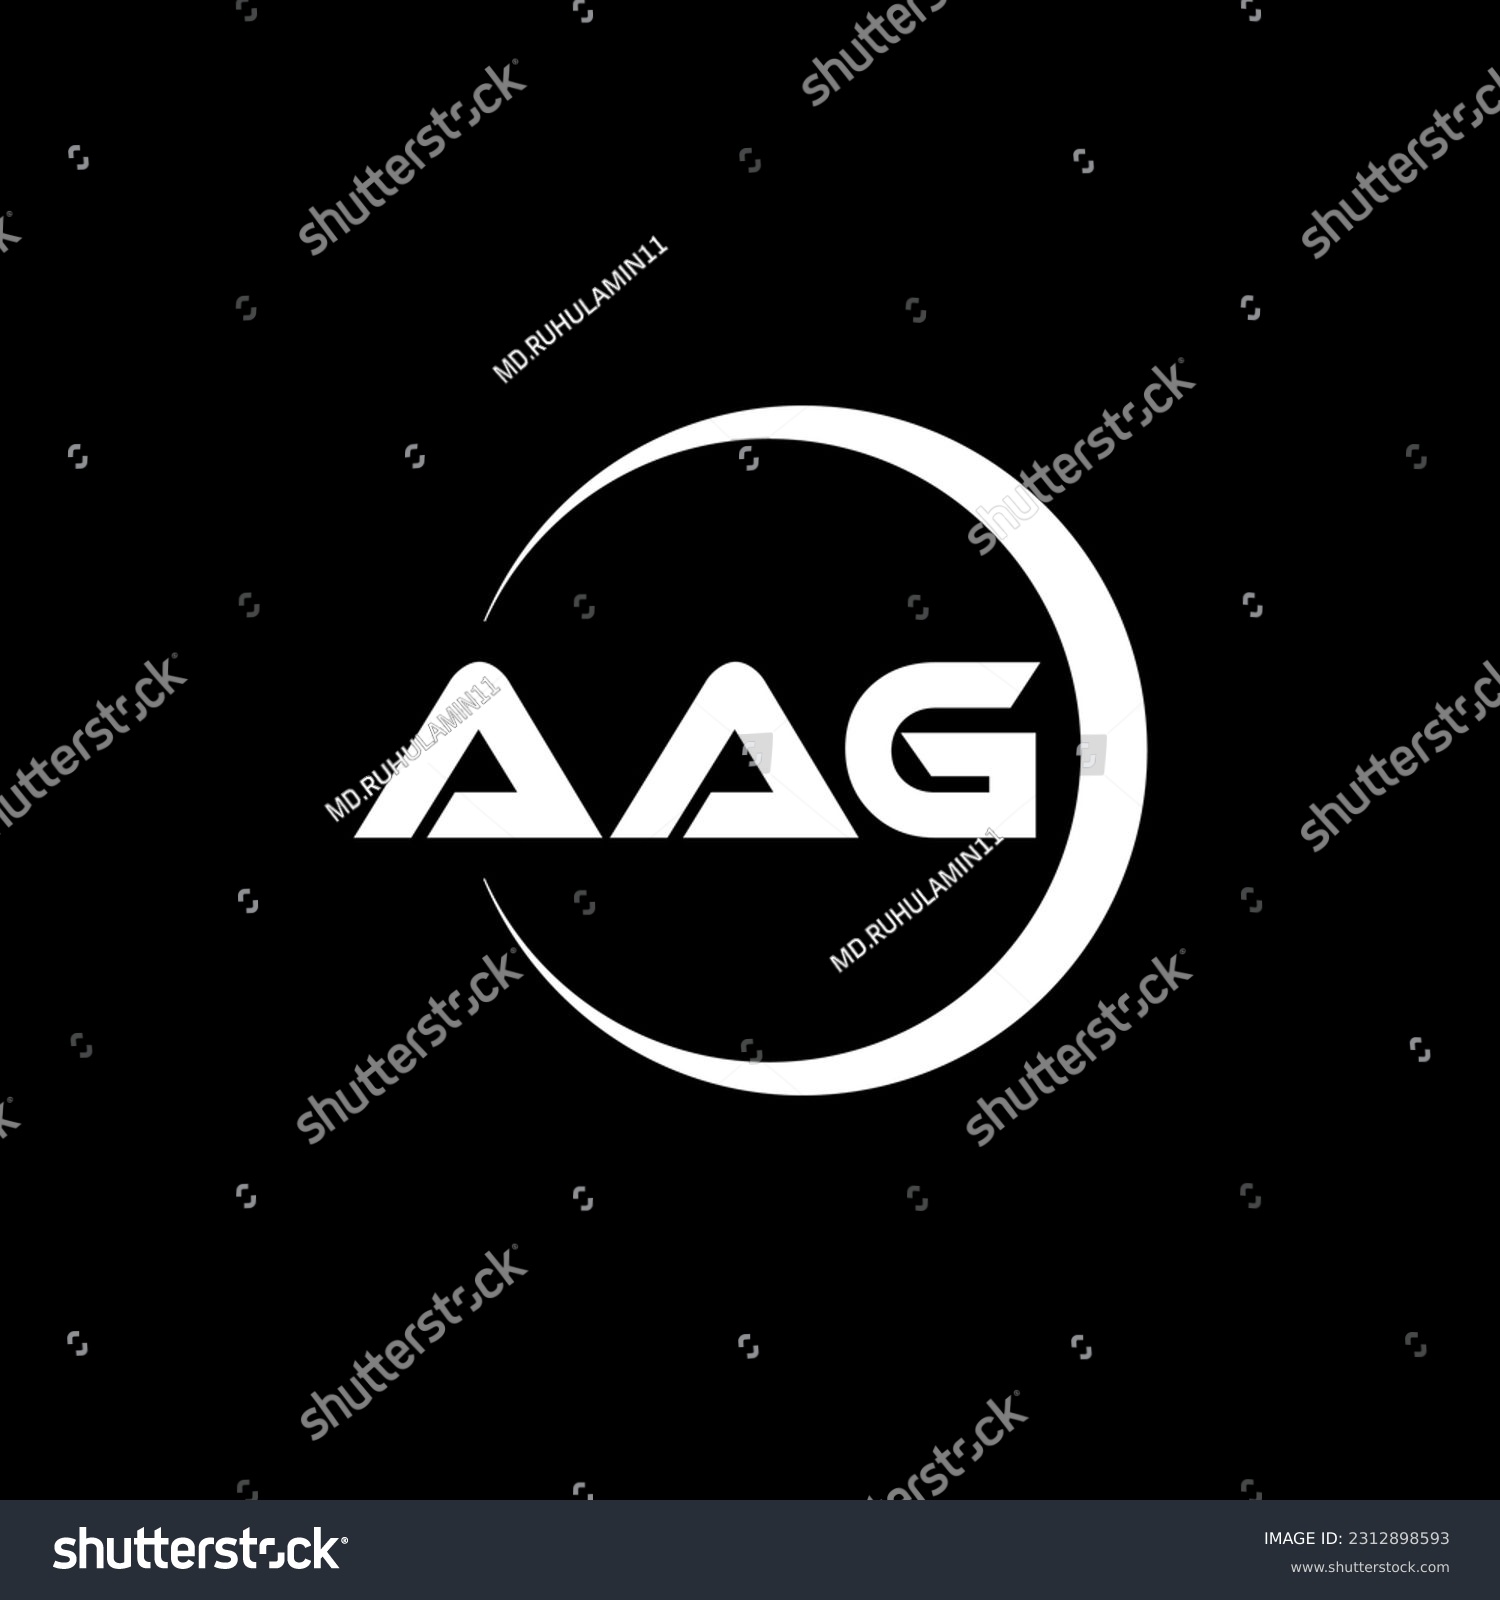 SVG of AAG letter logo design in illustration. Vector logo, calligraphy designs for logo, Poster, Invitation, etc. svg